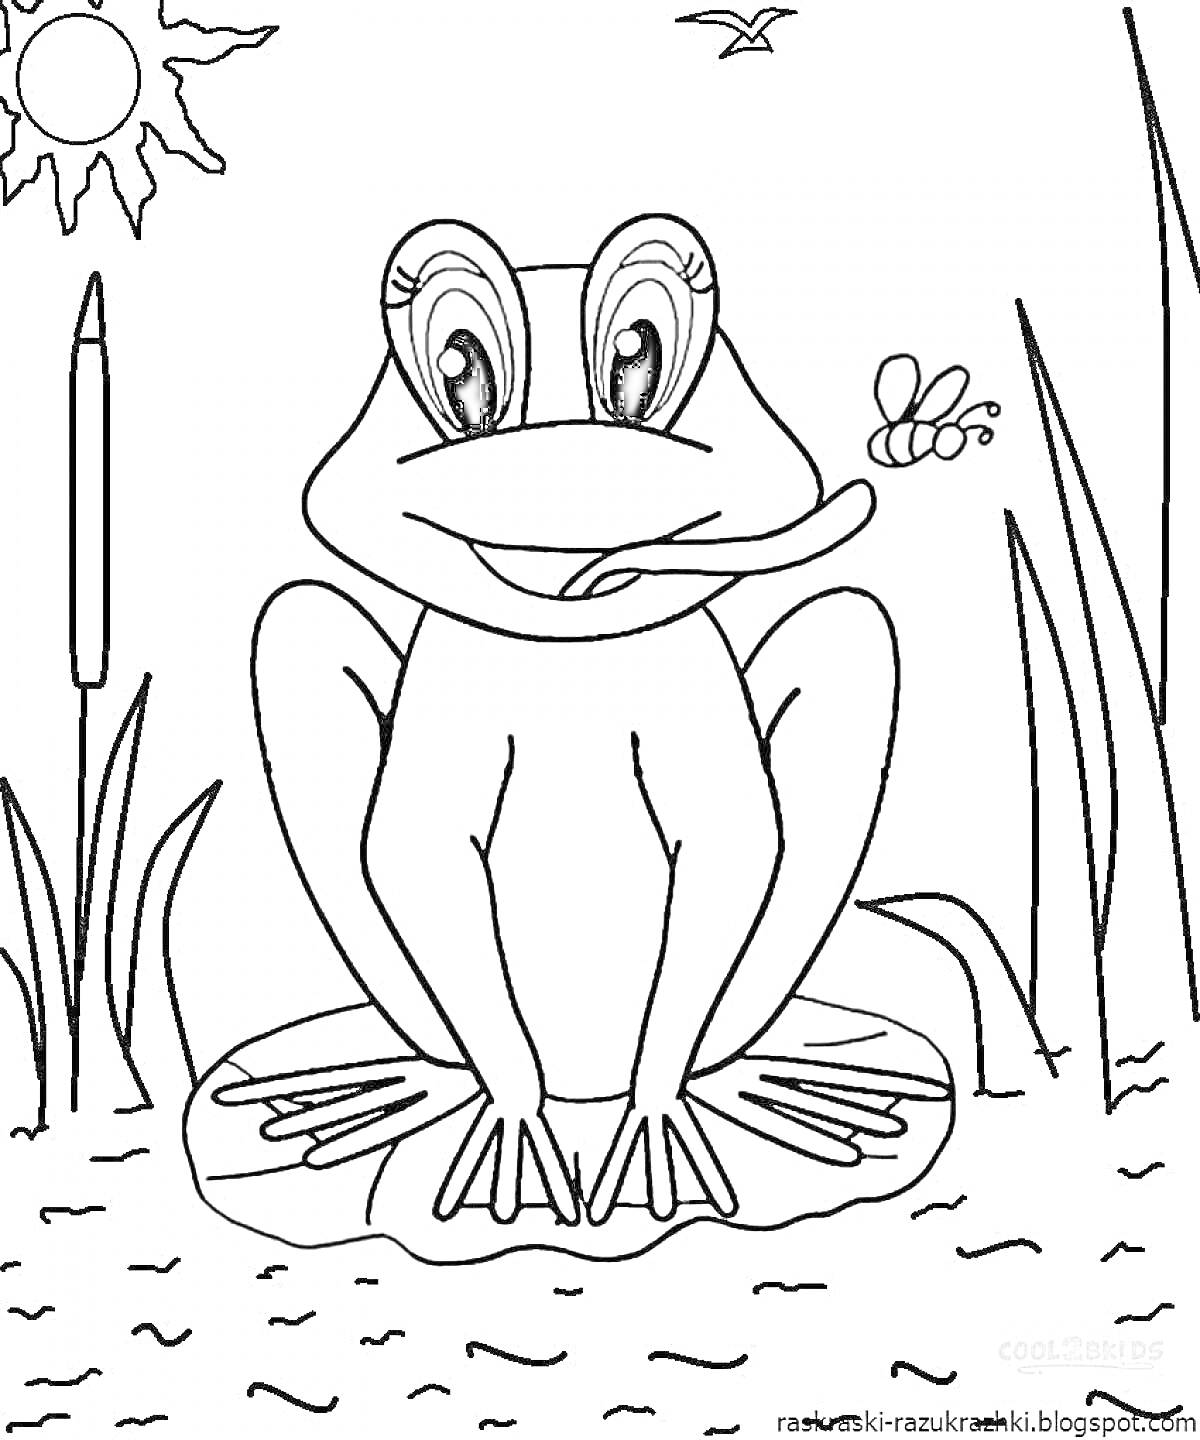 Раскраска лягушка путешественница сидит на кувшинке в пруду, на заднем плане солнце, камыши, стрекоза и бабочка